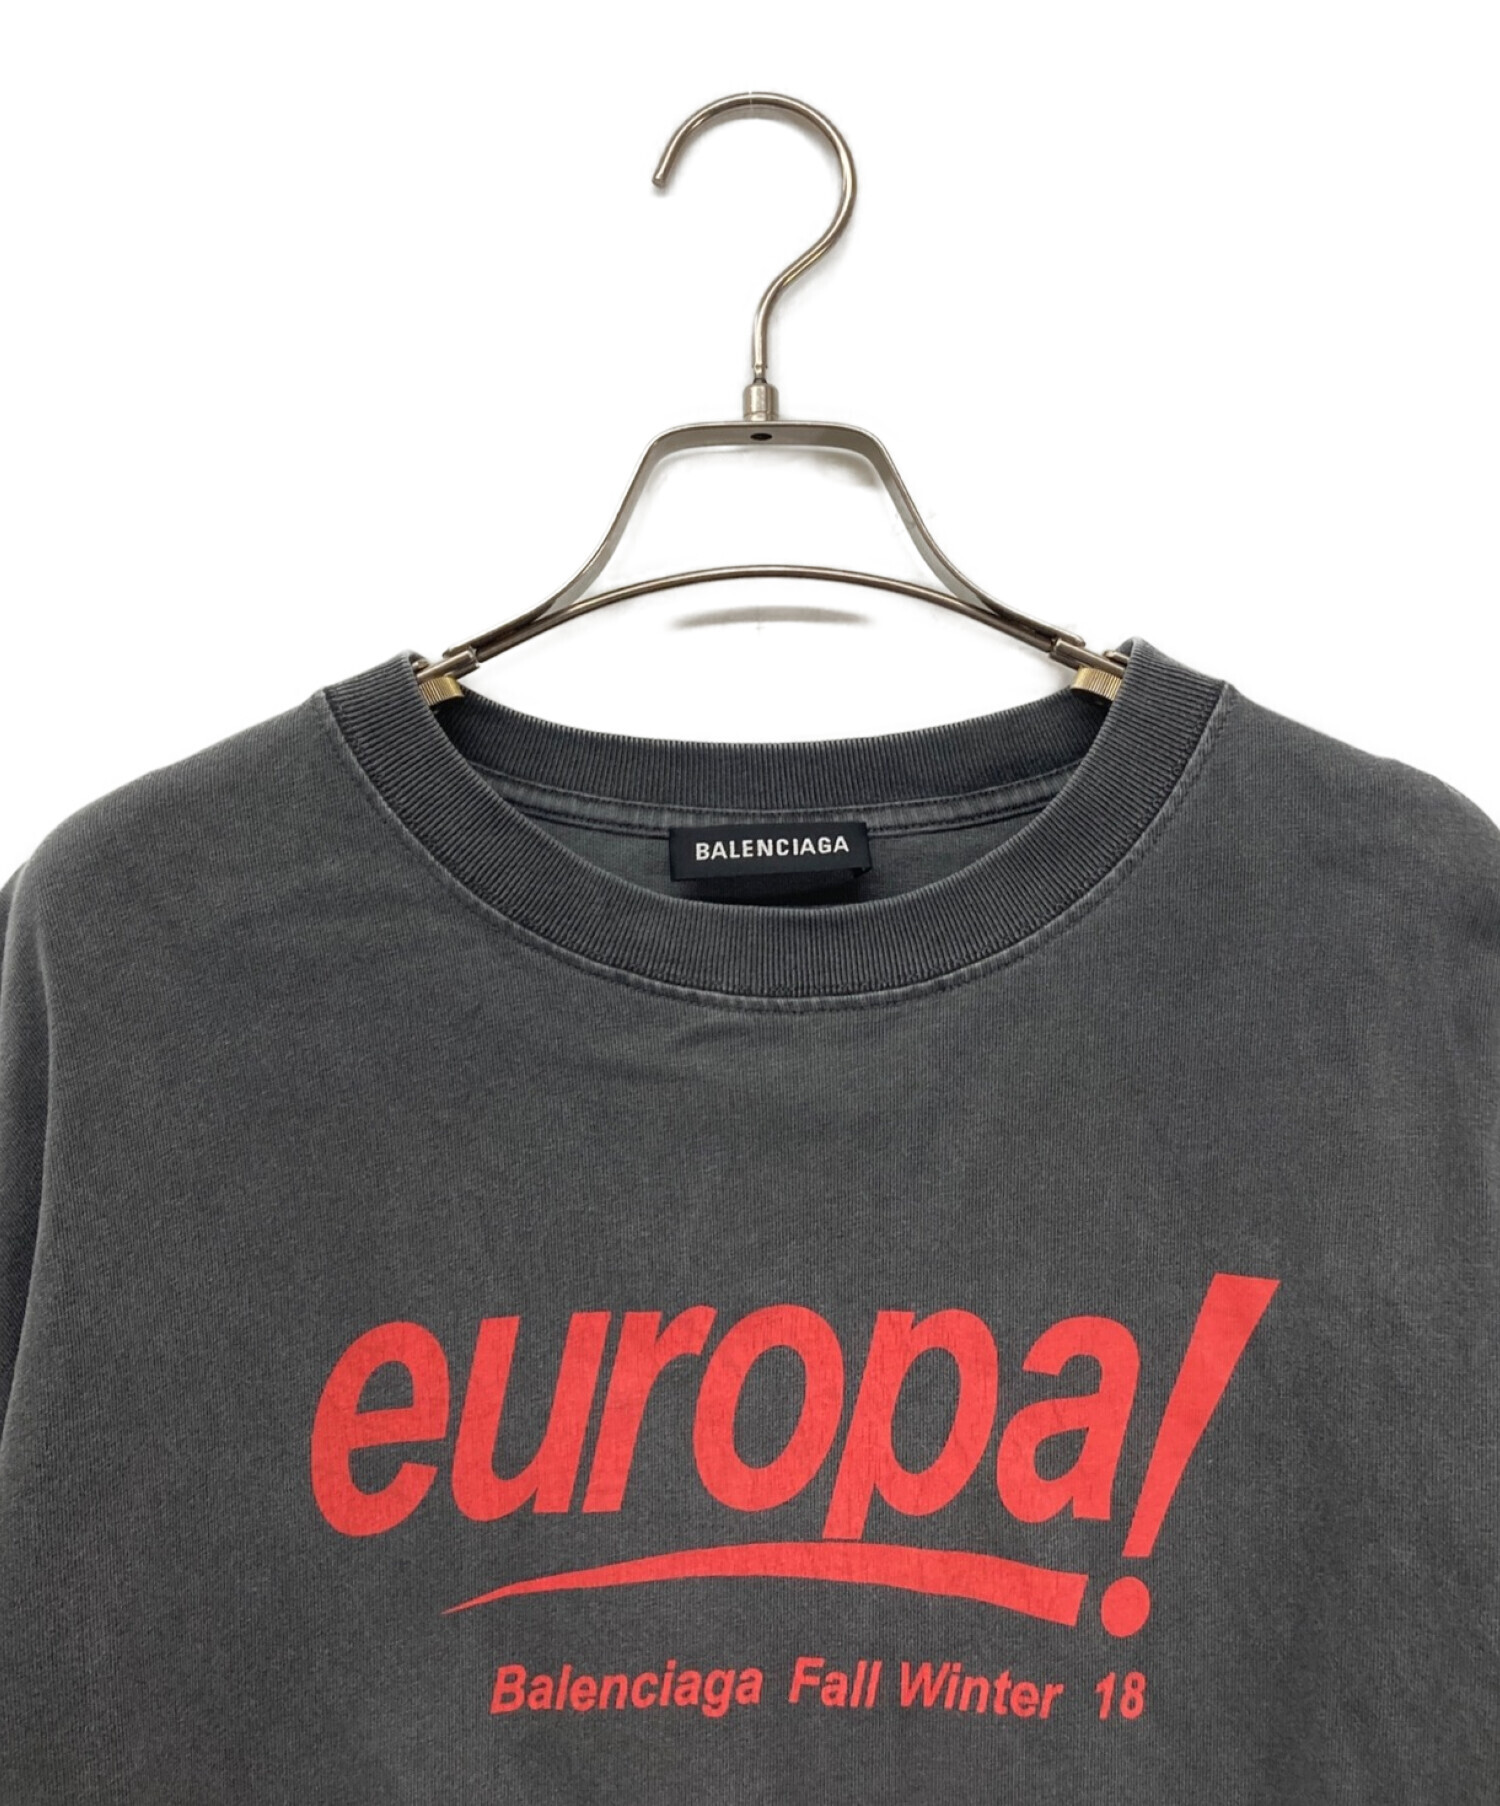 BALENCIAGA (バレンシアガ) europa!プリントTシャツ BALENCIAGA バレンシアガ オーバーサイズTシャツ 18AW  535717 グレー サイズ:S